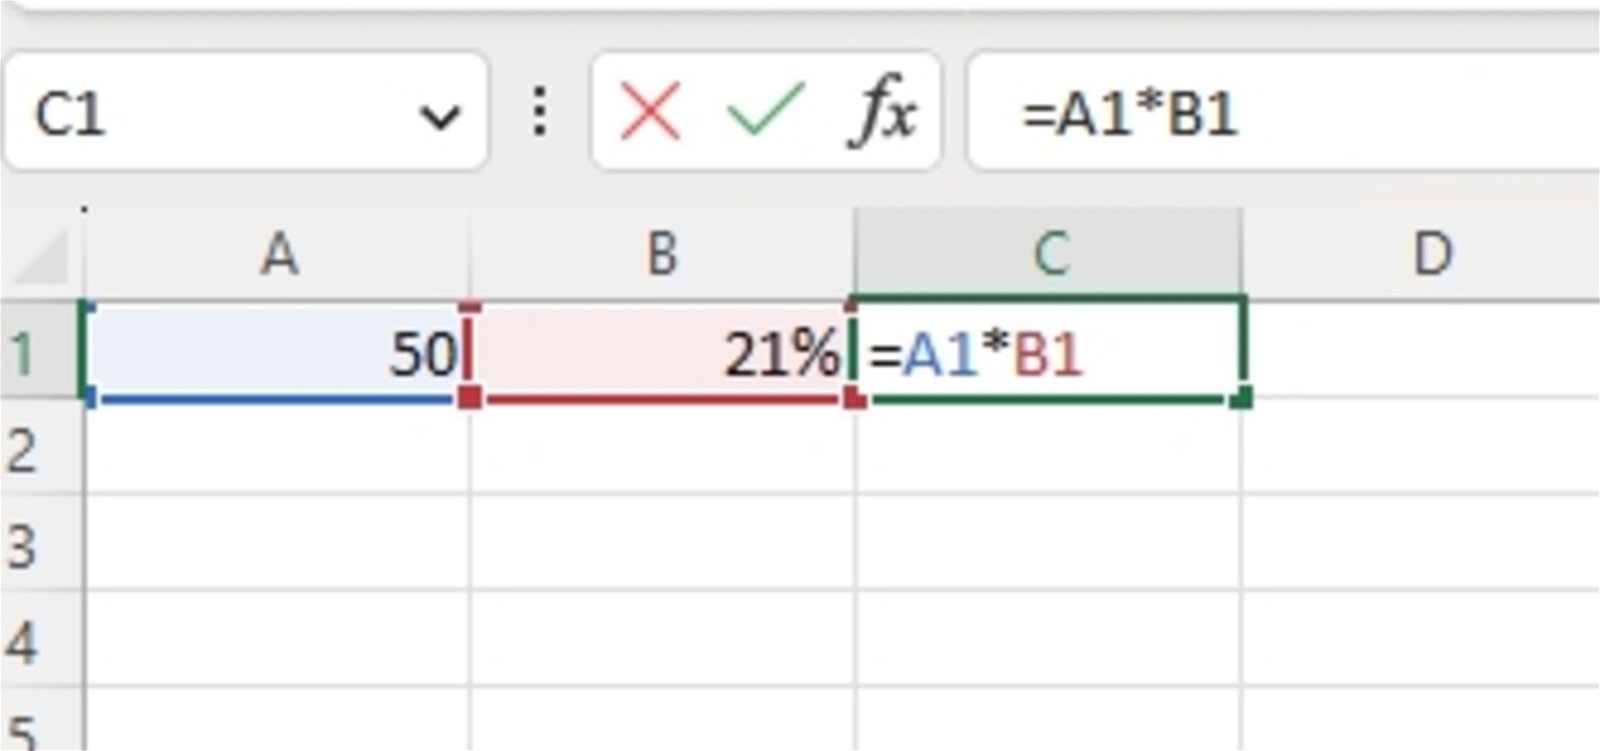 Cómo calcular porcentajes en Excel paso a paso